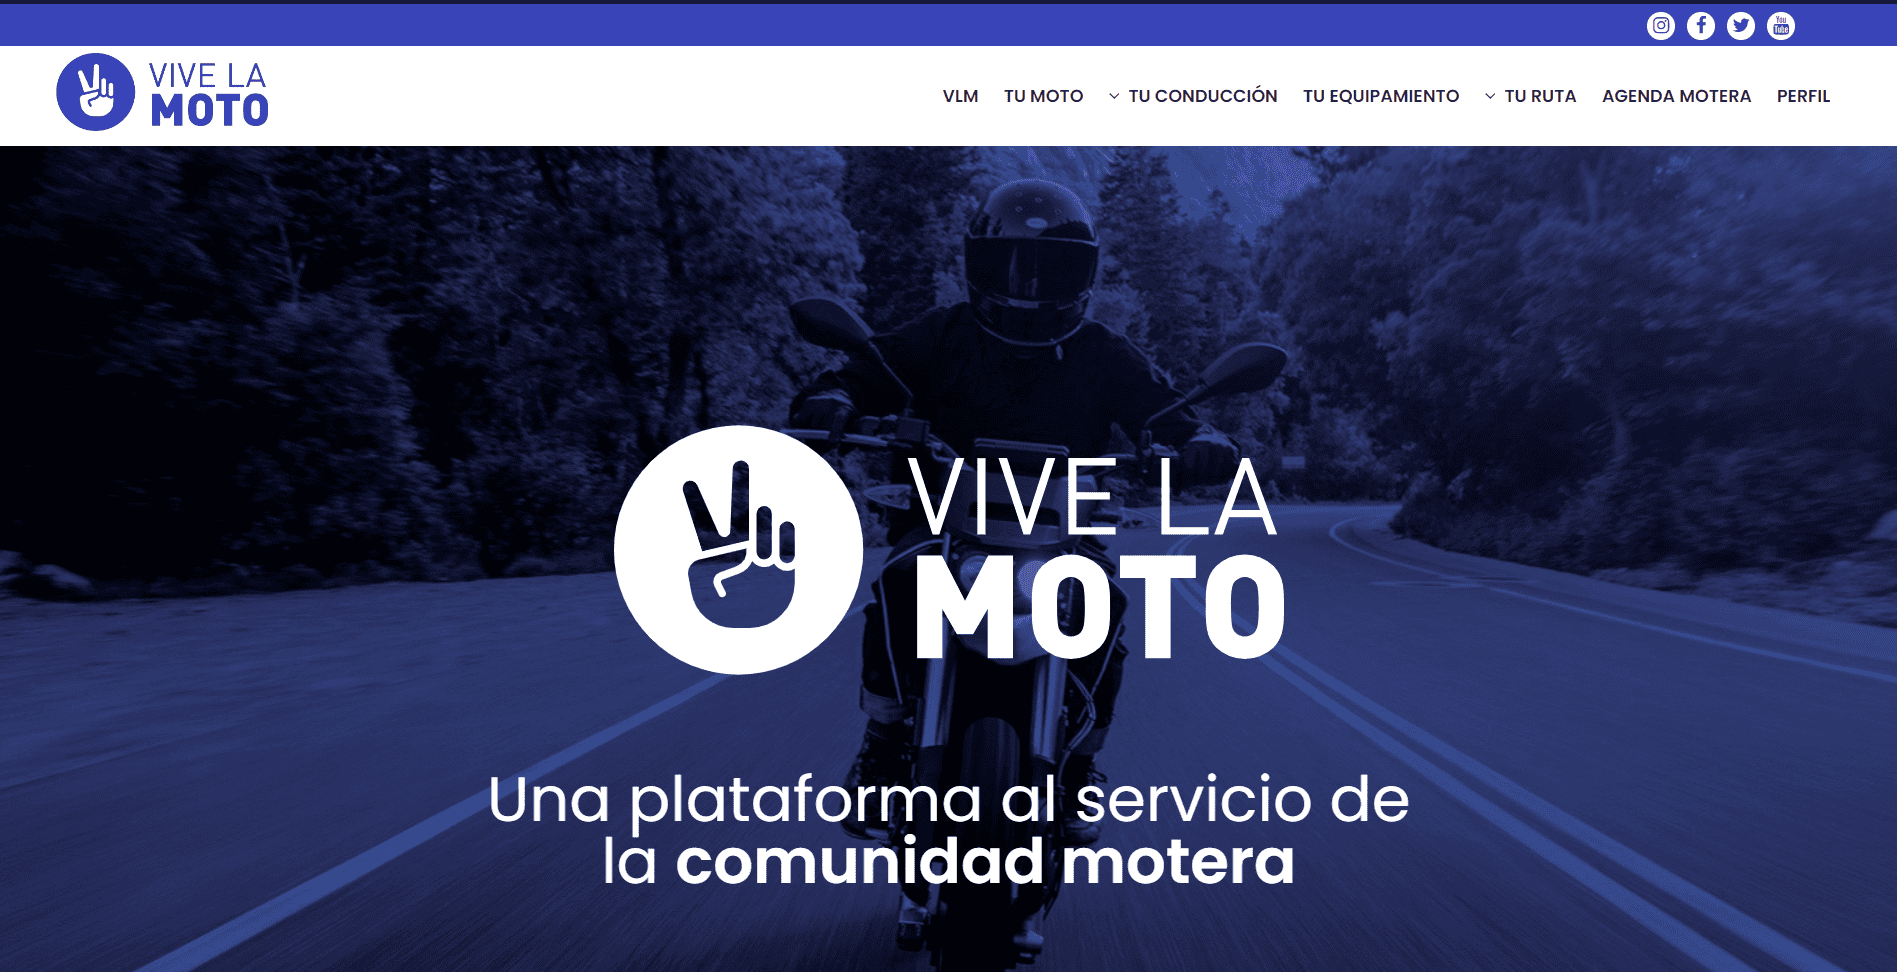 (c) Vivelamoto.org